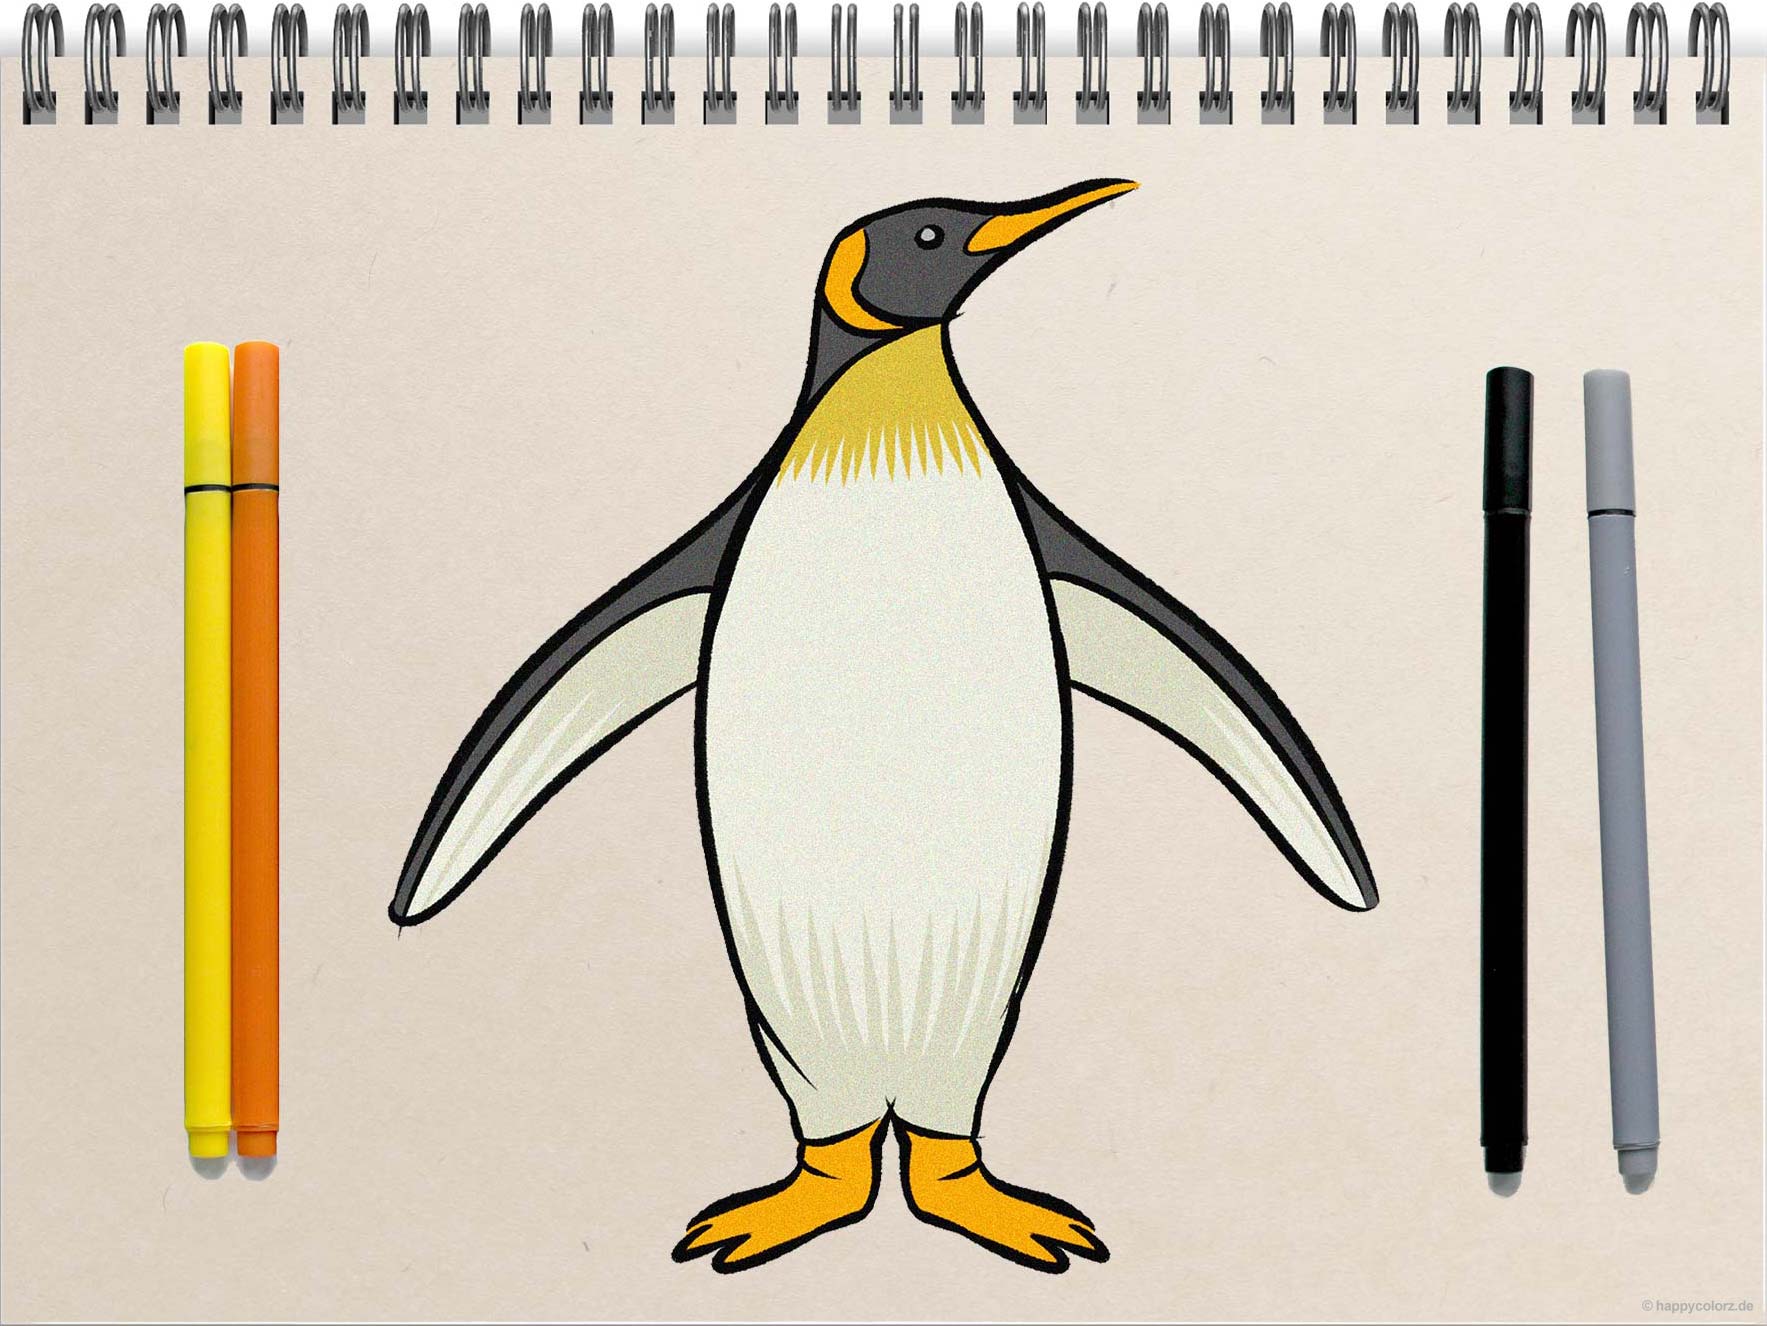 Pinguin zeichnen - Schritt für Schritt